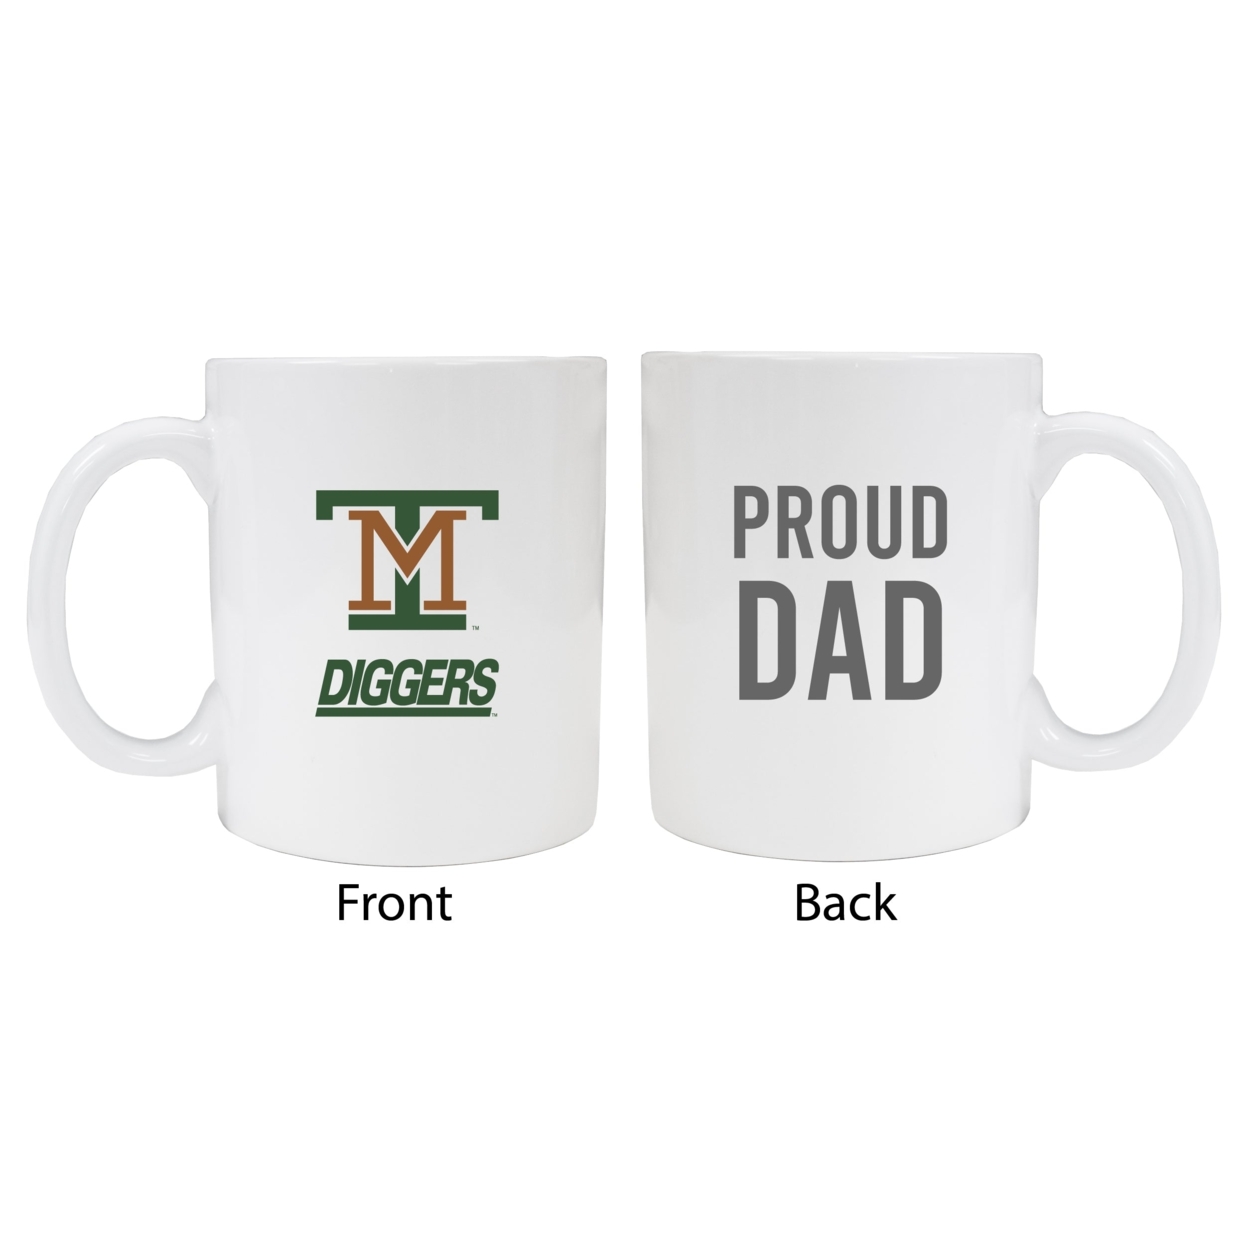 Montana Tech Proud Dad Ceramic Coffee Mug - White